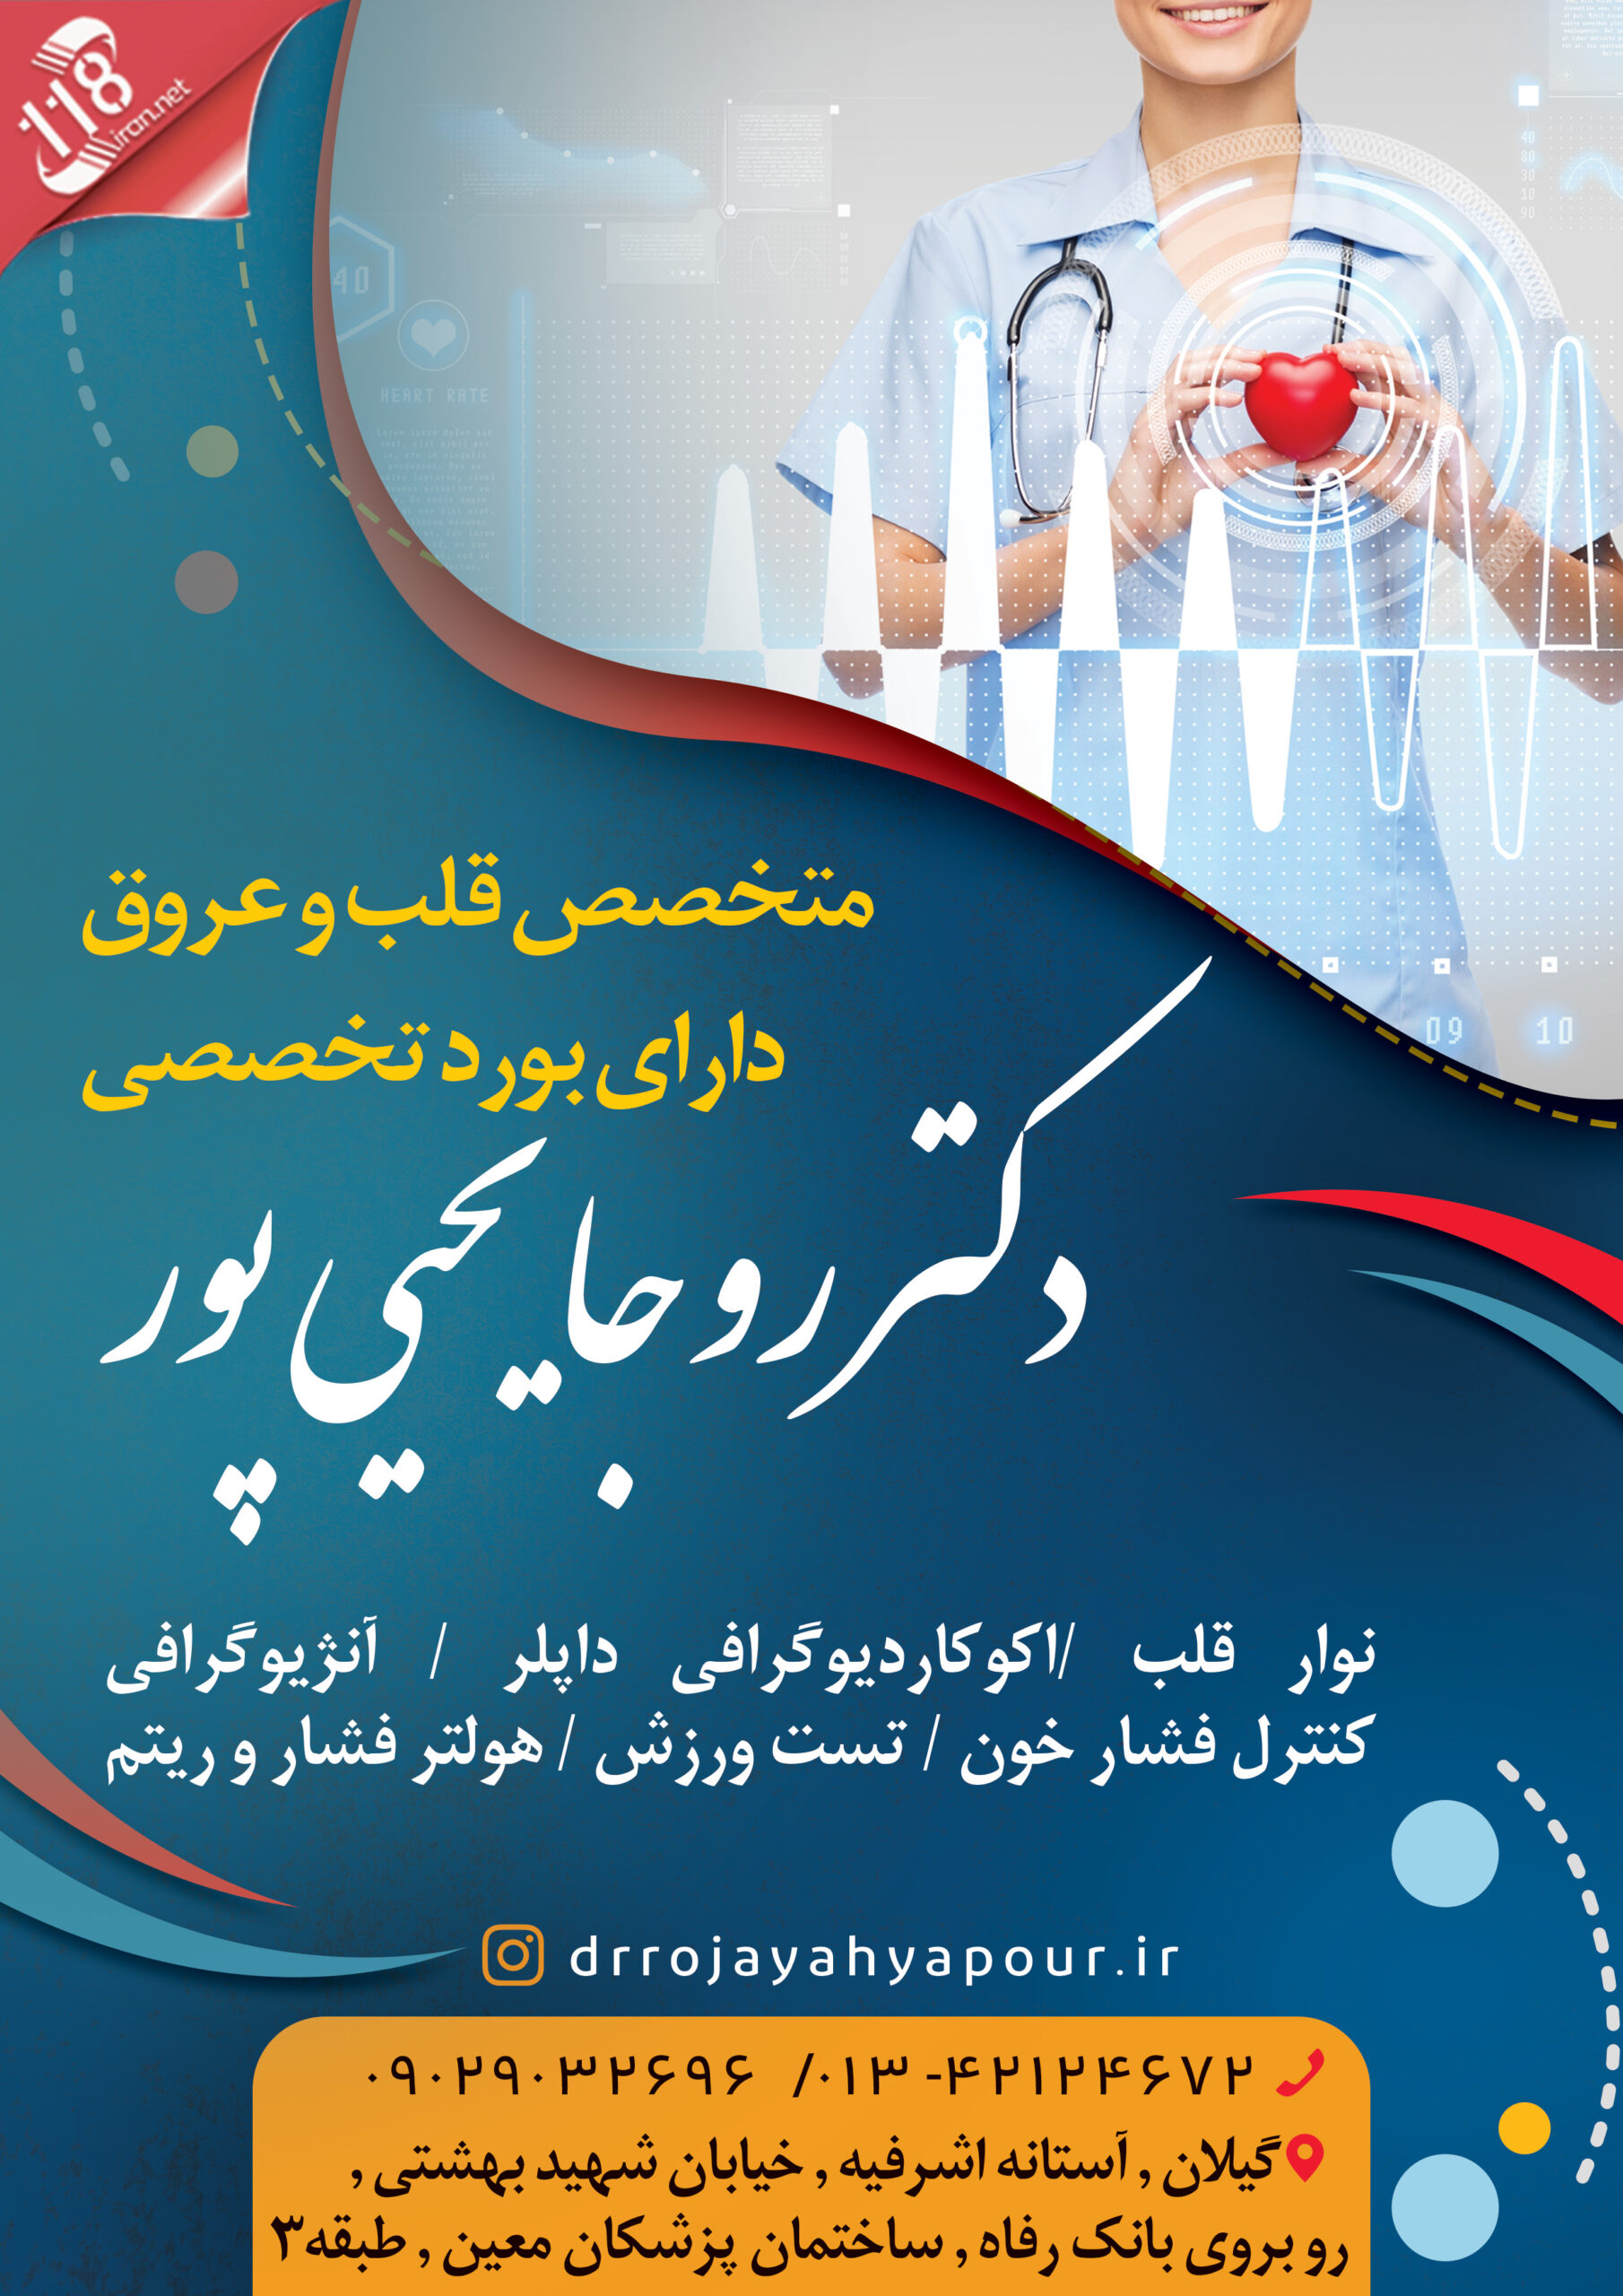  دکتر روجا یحیی پور در آستانه اشرفیه 